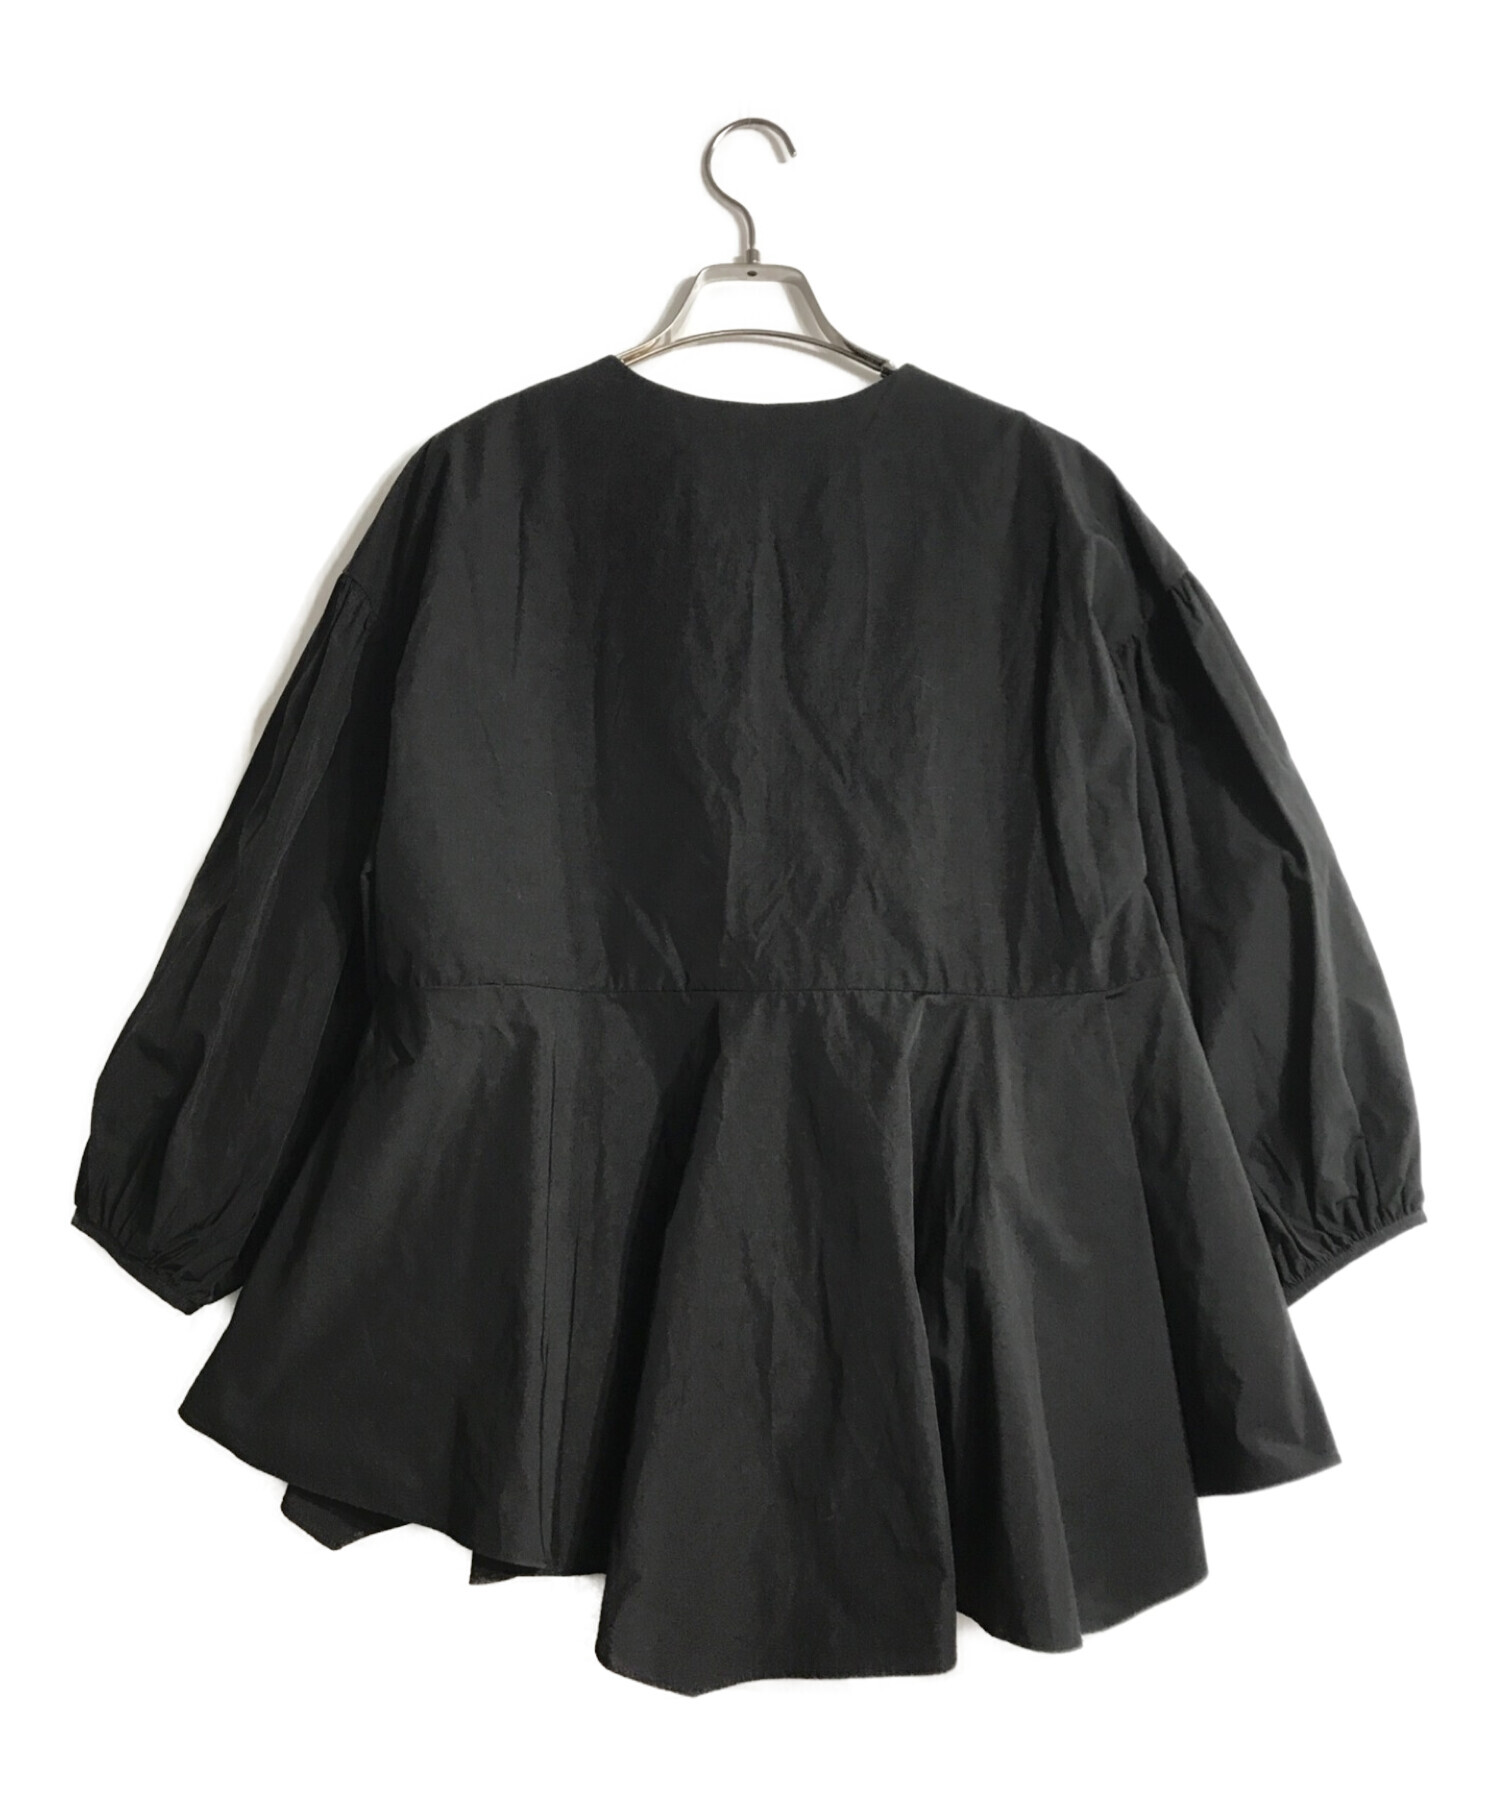 ANANA (アナナ) T/Cパールキーネックボリューム袖ブラウス ブラック サイズ:F